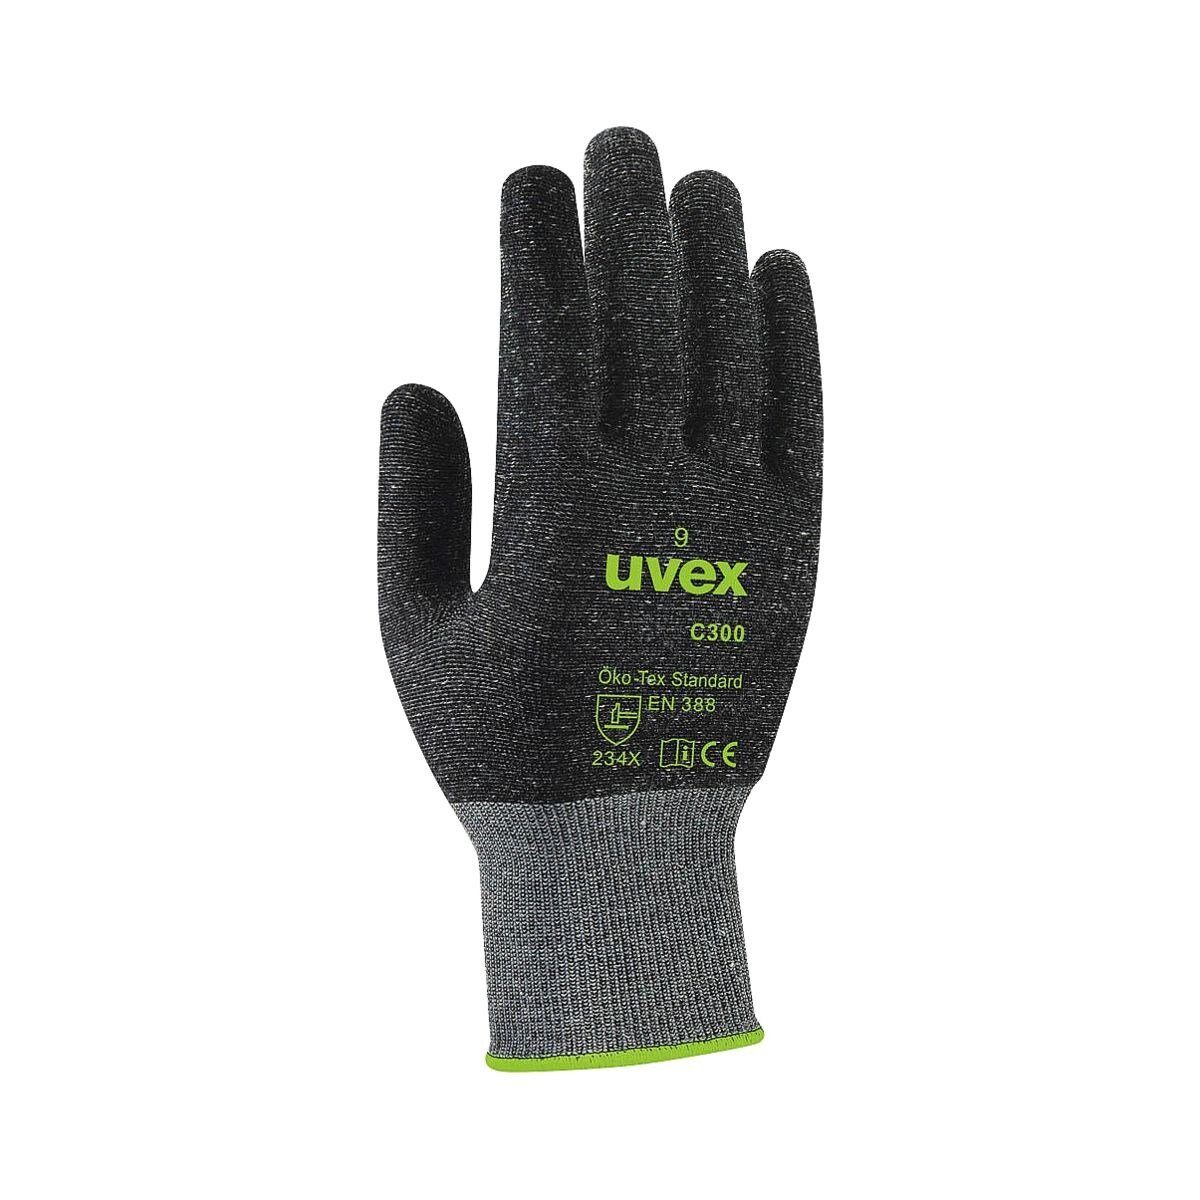 Uvex Schnittschutzhandschuhe Technology mit 8, dry Bamboo TwinFlex® C300 uvex Größe